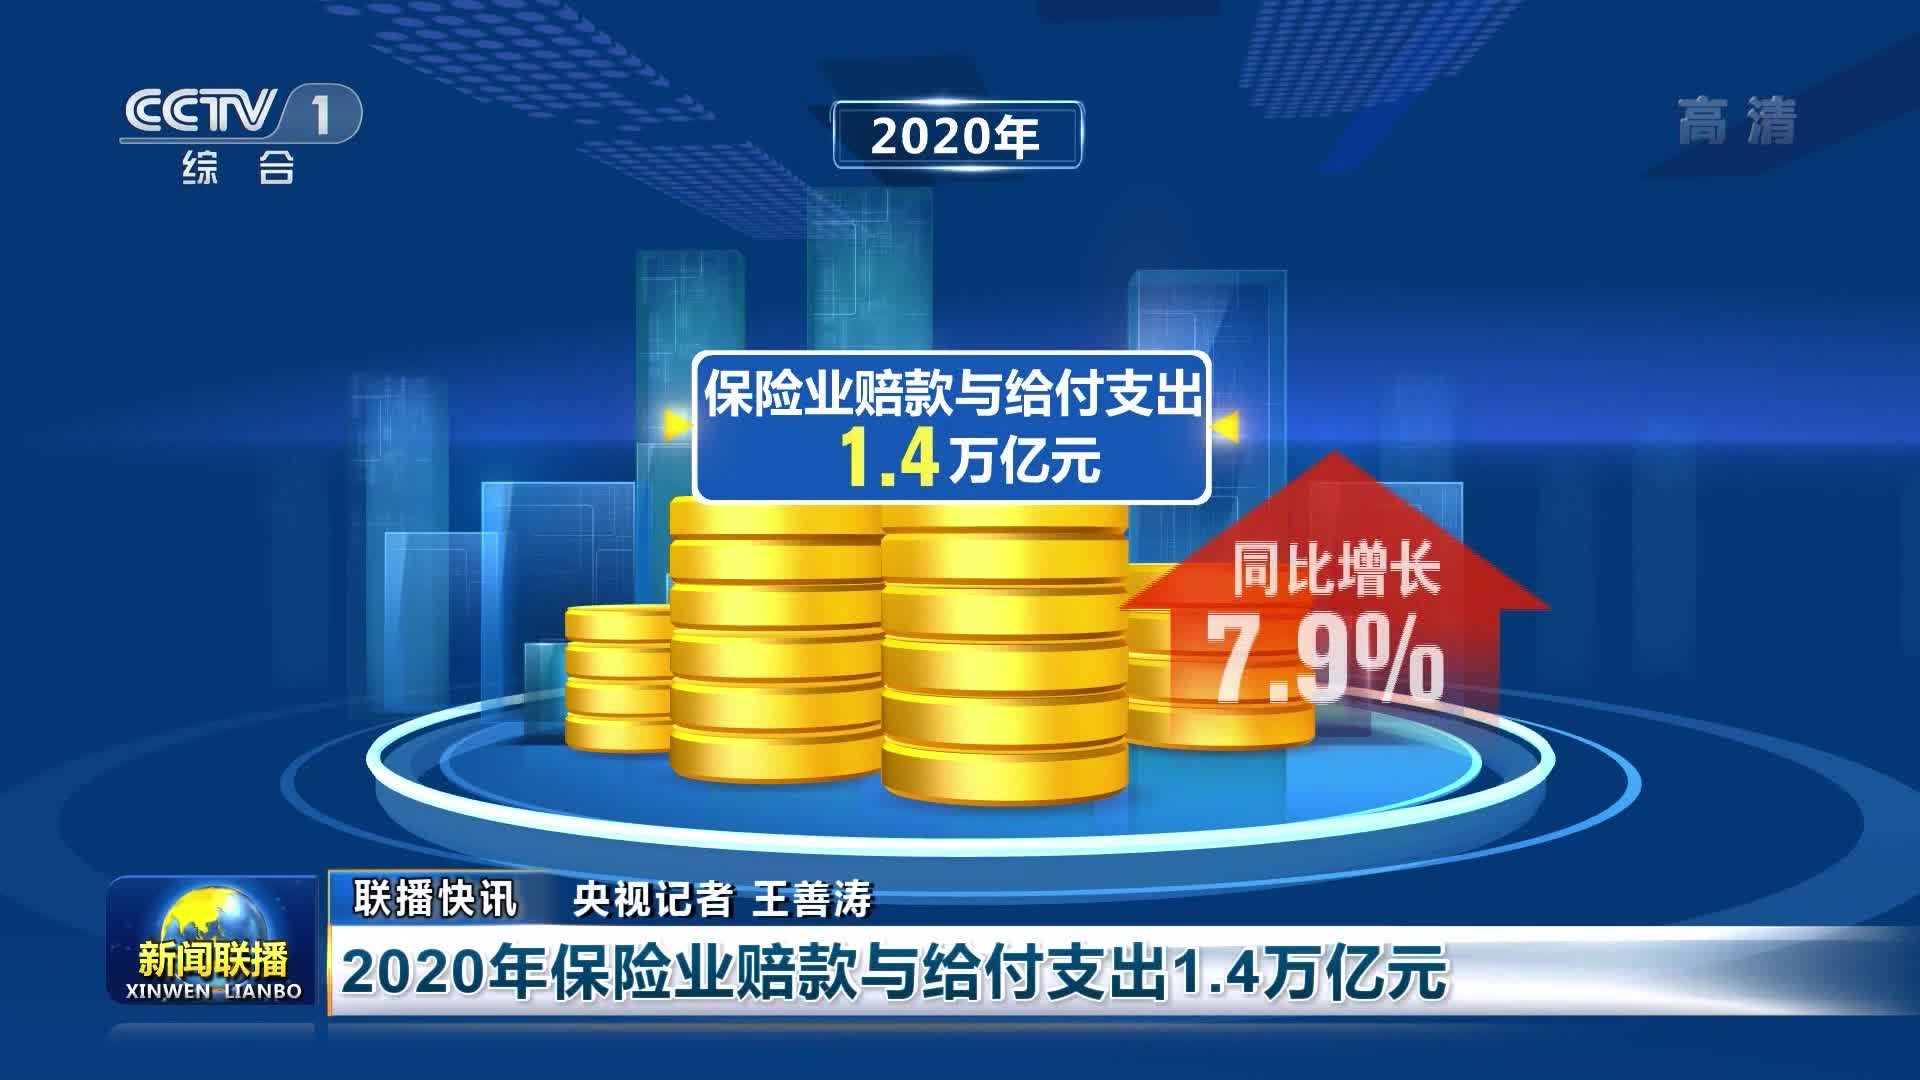 【联播快讯】2020年保险业赔款与给付支出1.4万亿元